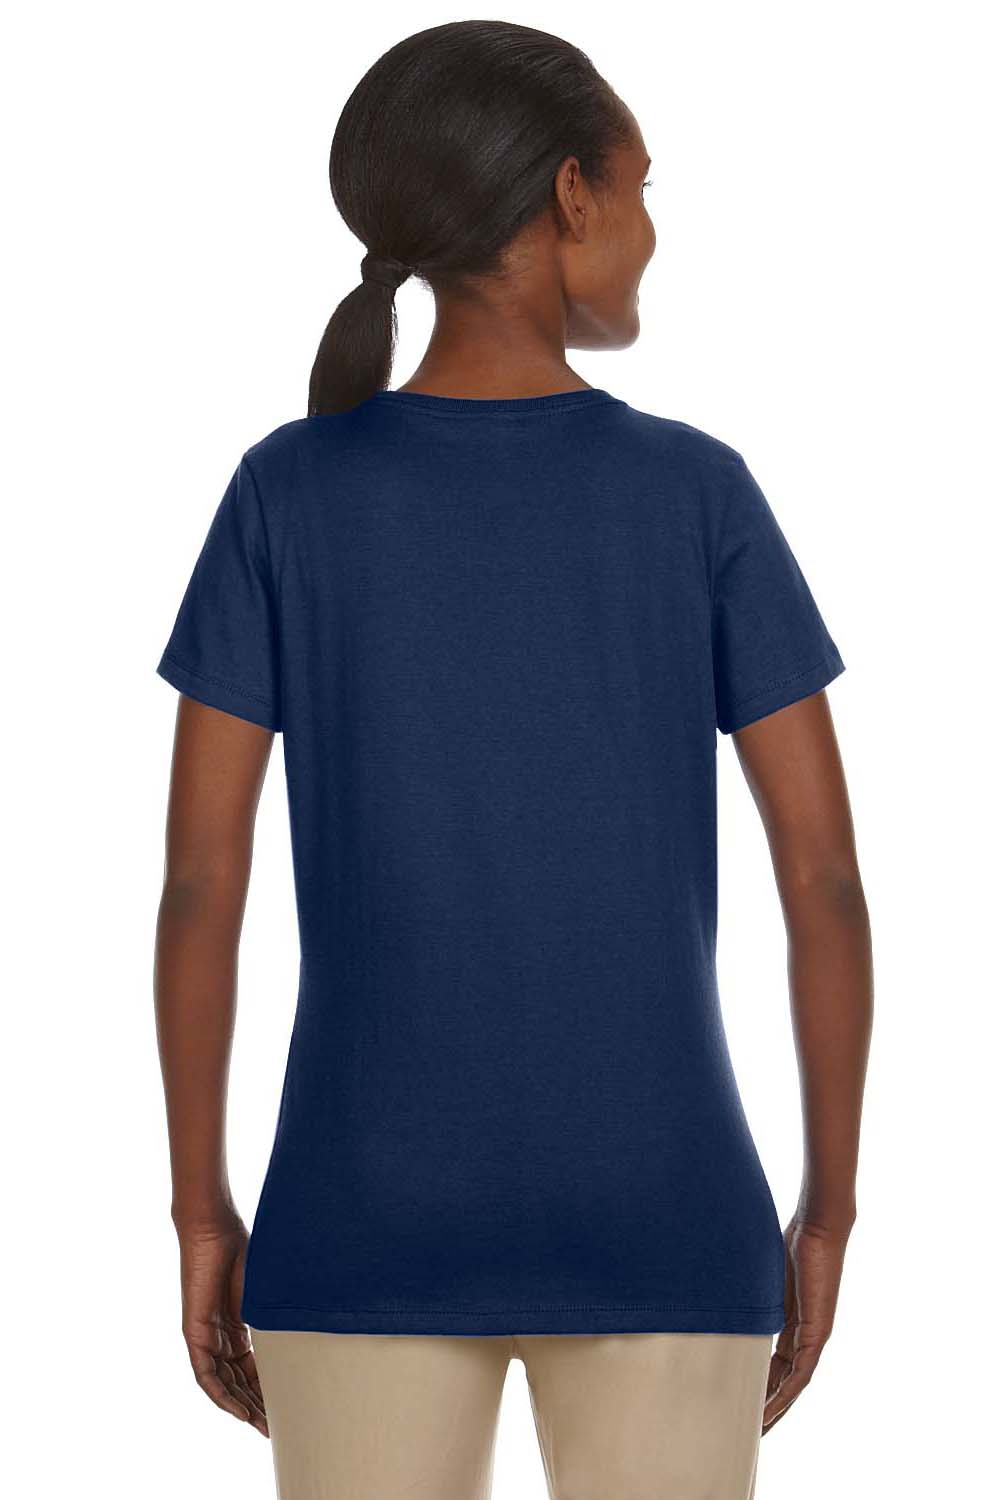 Jerzees 29WR Womens Dri-Power Moisture Wicking Short Sleeve Crewneck T-Shirt Navy Blue Back